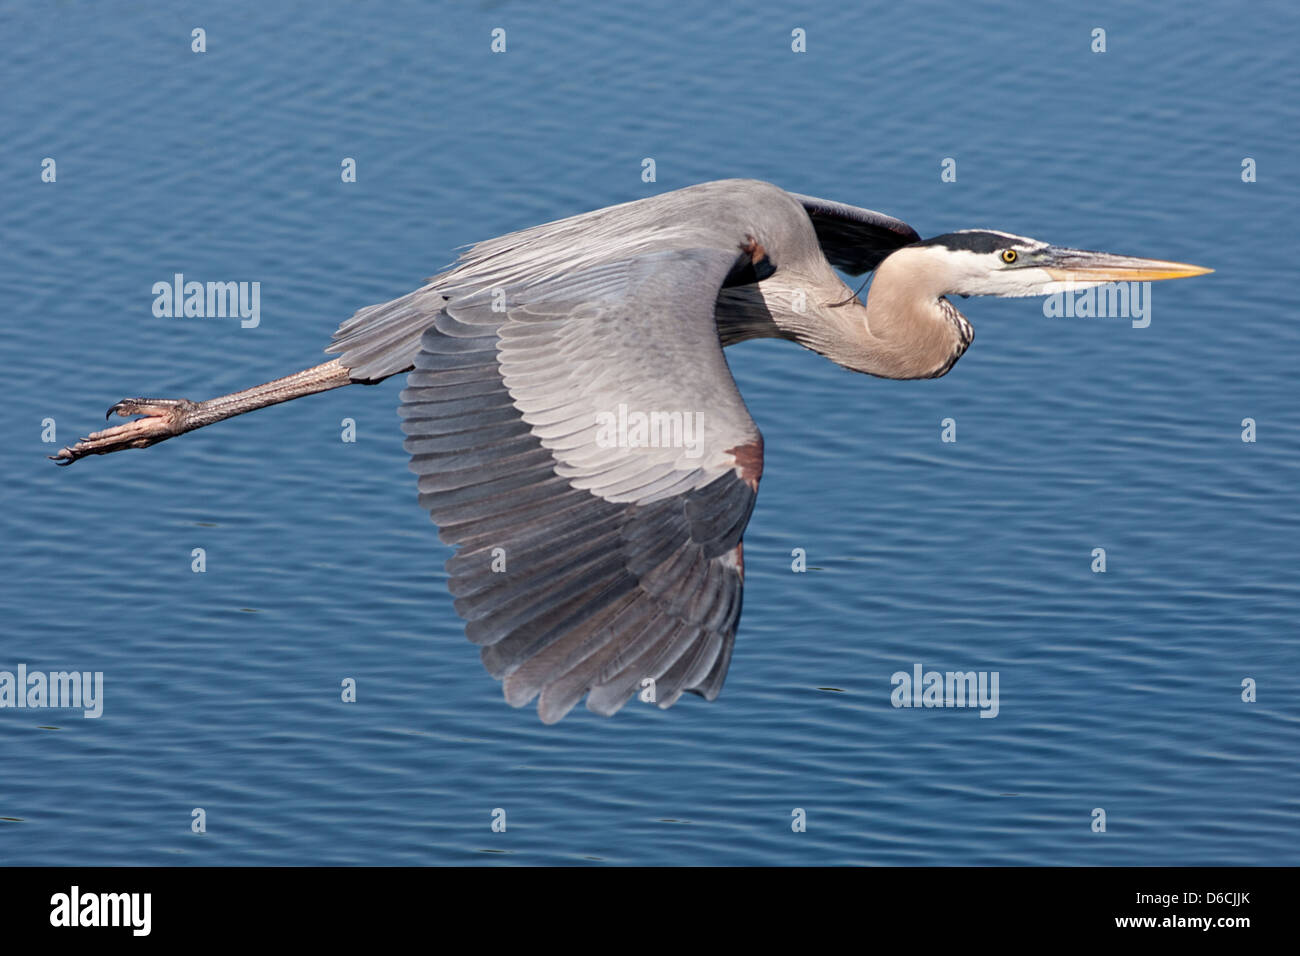 Great Blue Heron flying over ocean herons shorebird in flight wading bird nature wildlife environment Stock Photo